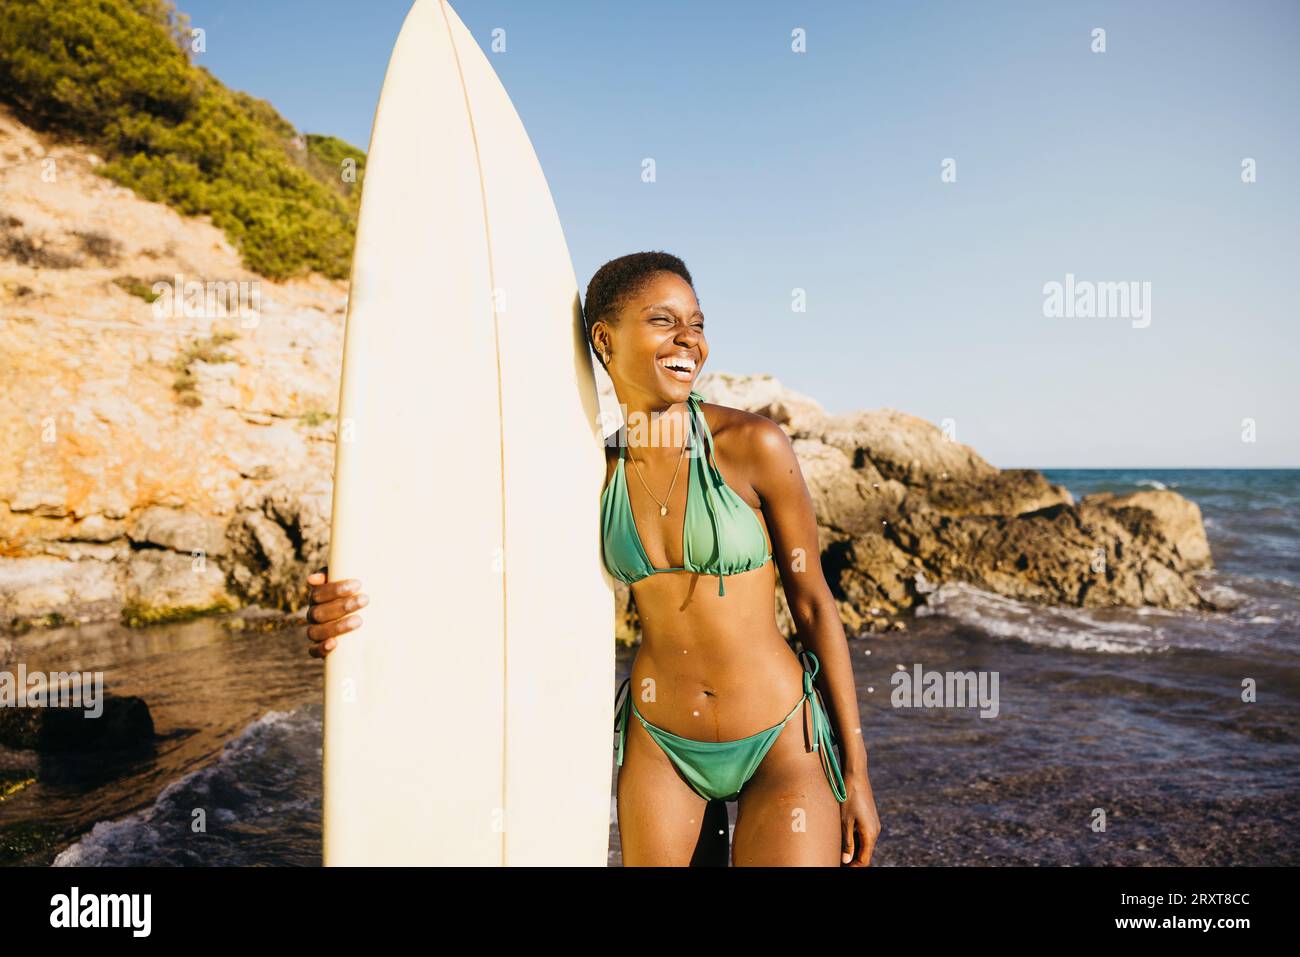 Portrait d'une surfeuse debout sur la plage en maillot de bain, avec sa planche de surf à ses côtés. Femme heureuse faisant des activités de plage pendant les vacances d'été. Banque D'Images